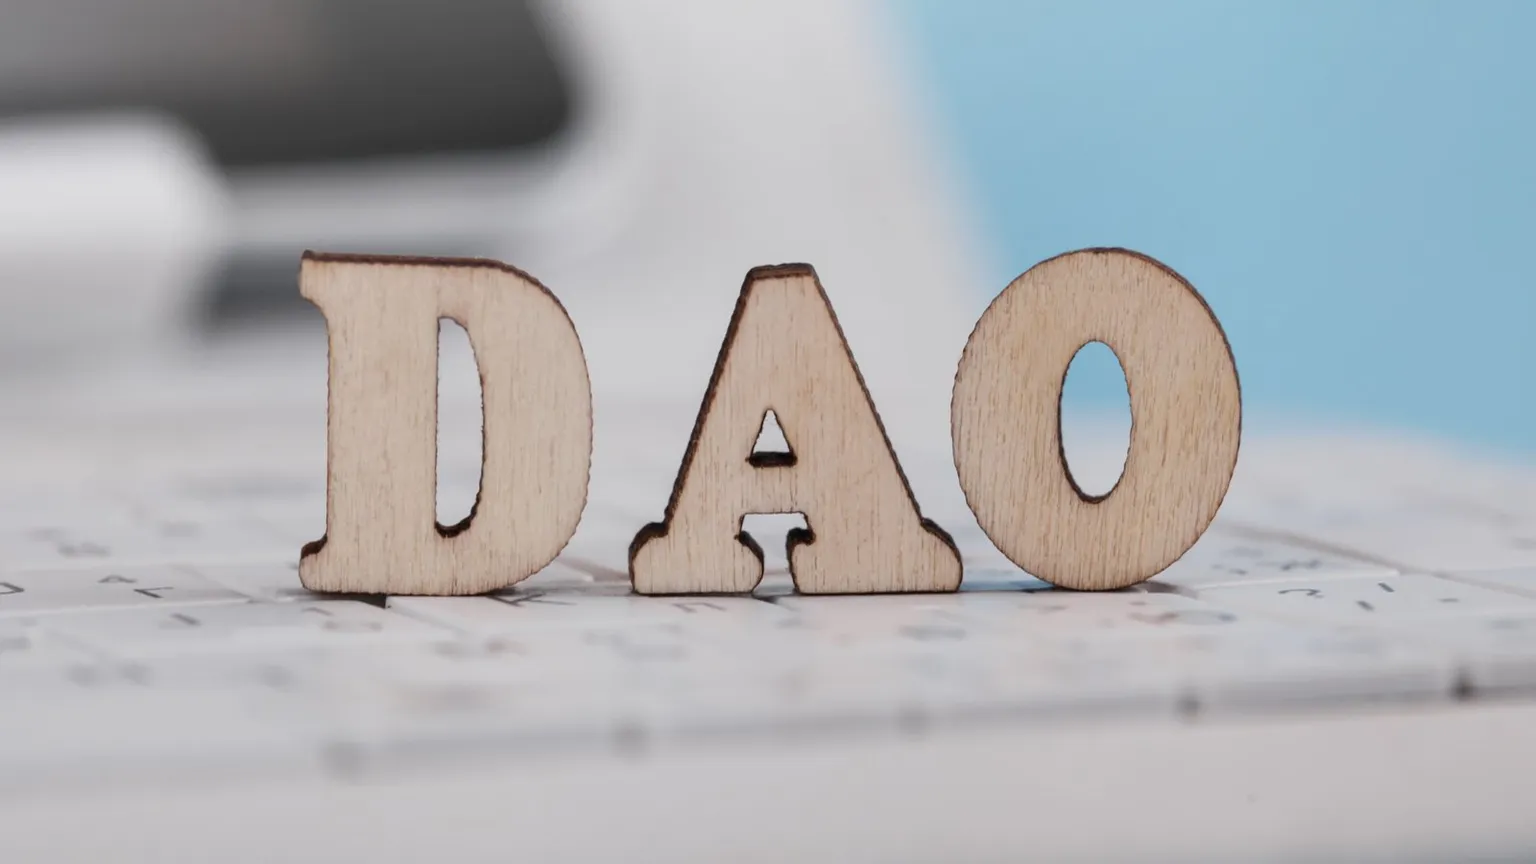 A DAO is a decentralized autonomous organization. Image: Shutterstock.